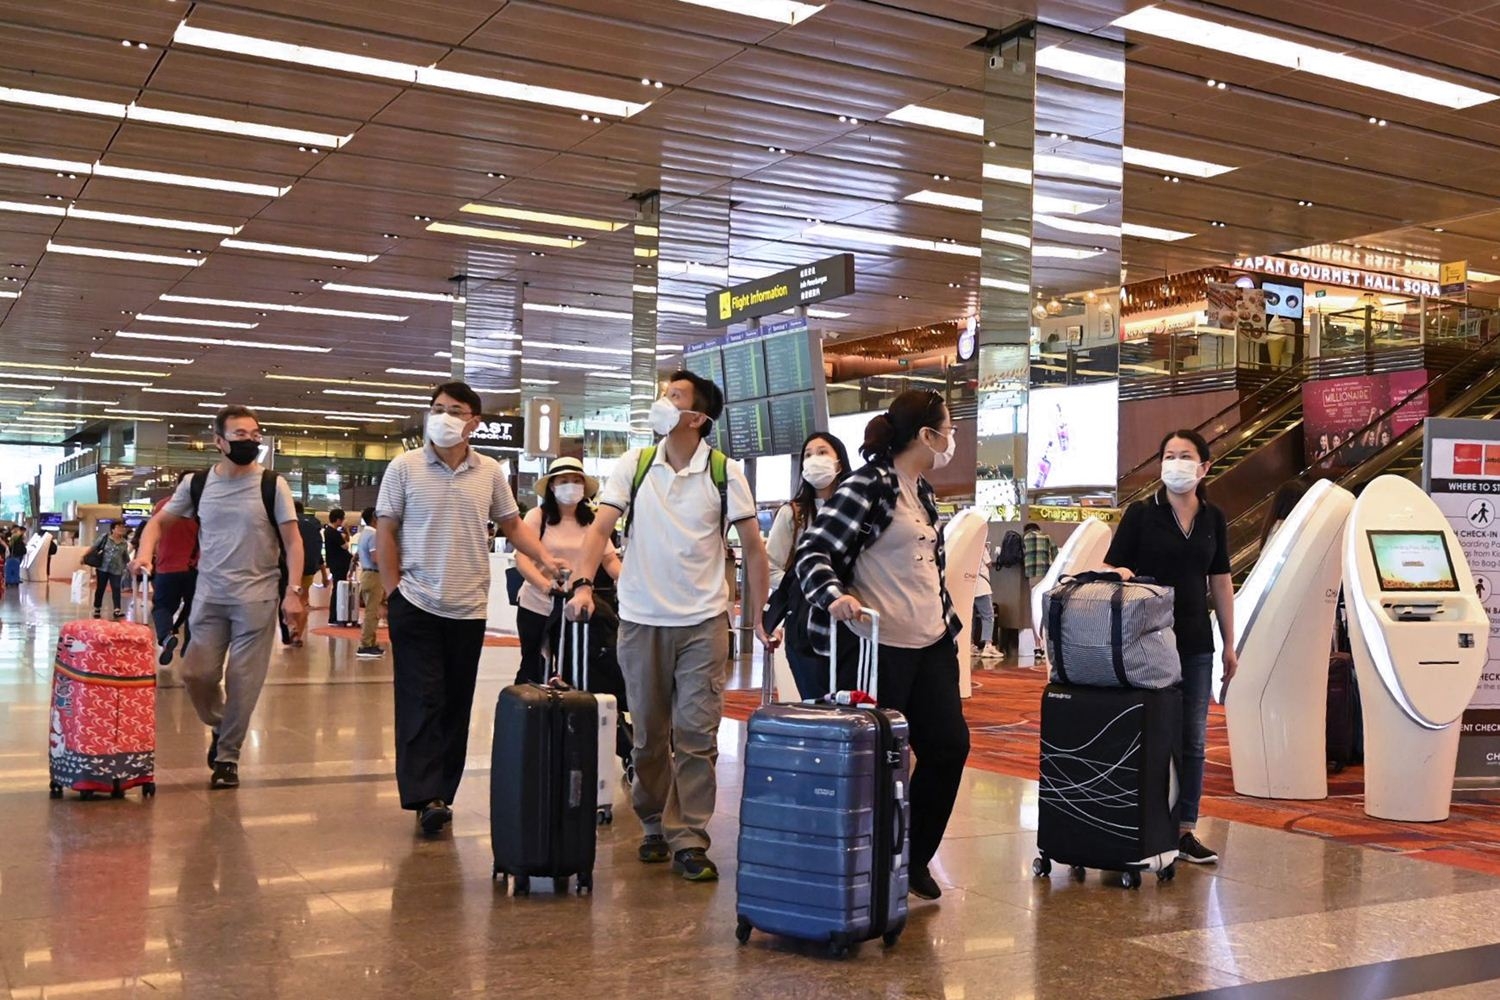 ไทยจ่อยกระดับคัดกรองผู้เดินทางจากสิงคโปร์-ฮ่องกงหลังพบผู้ป่วยเพิ่ม